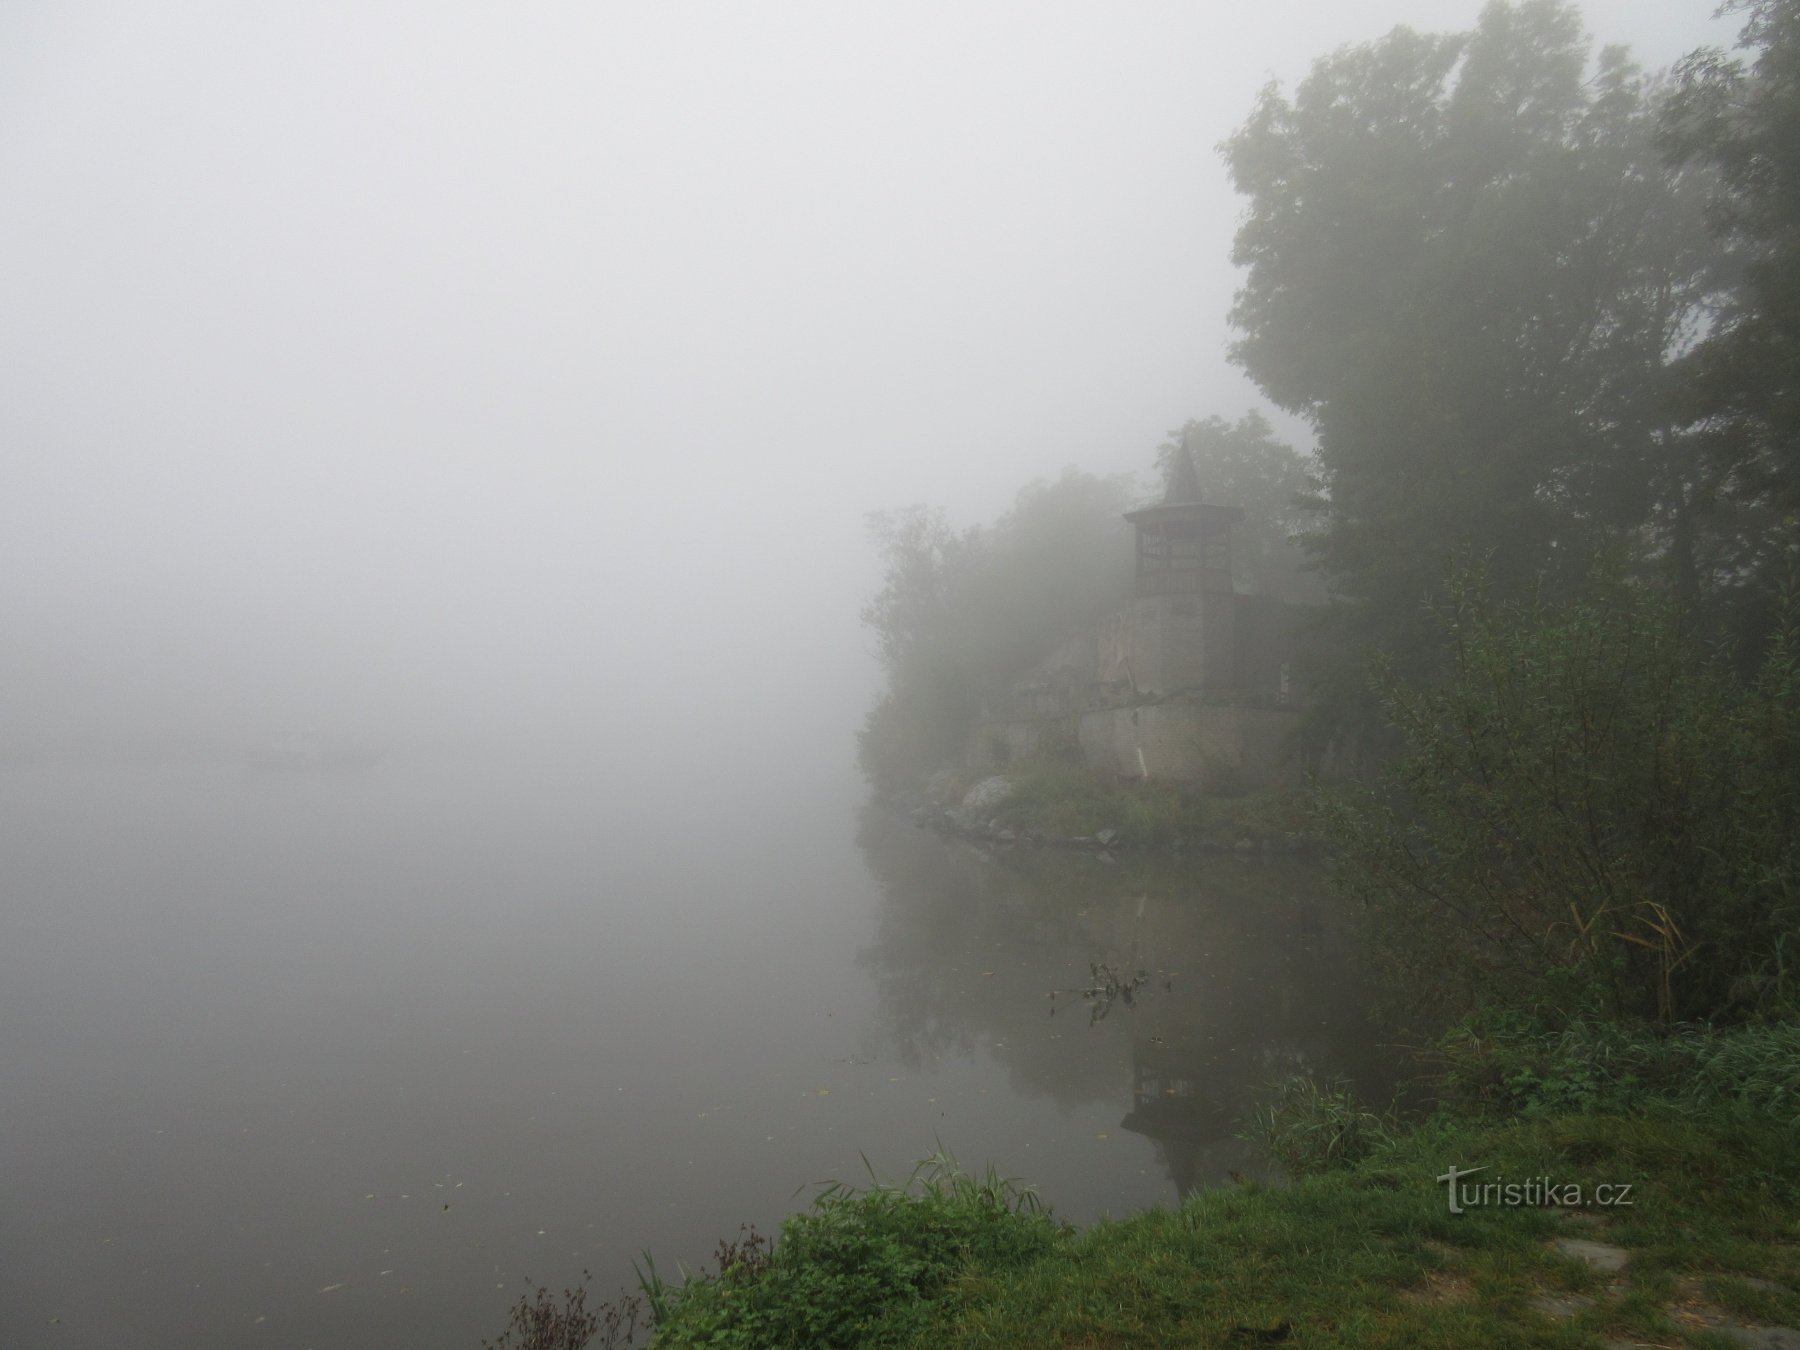 Утренний вид на слияние Баковского потока и Влтавы.